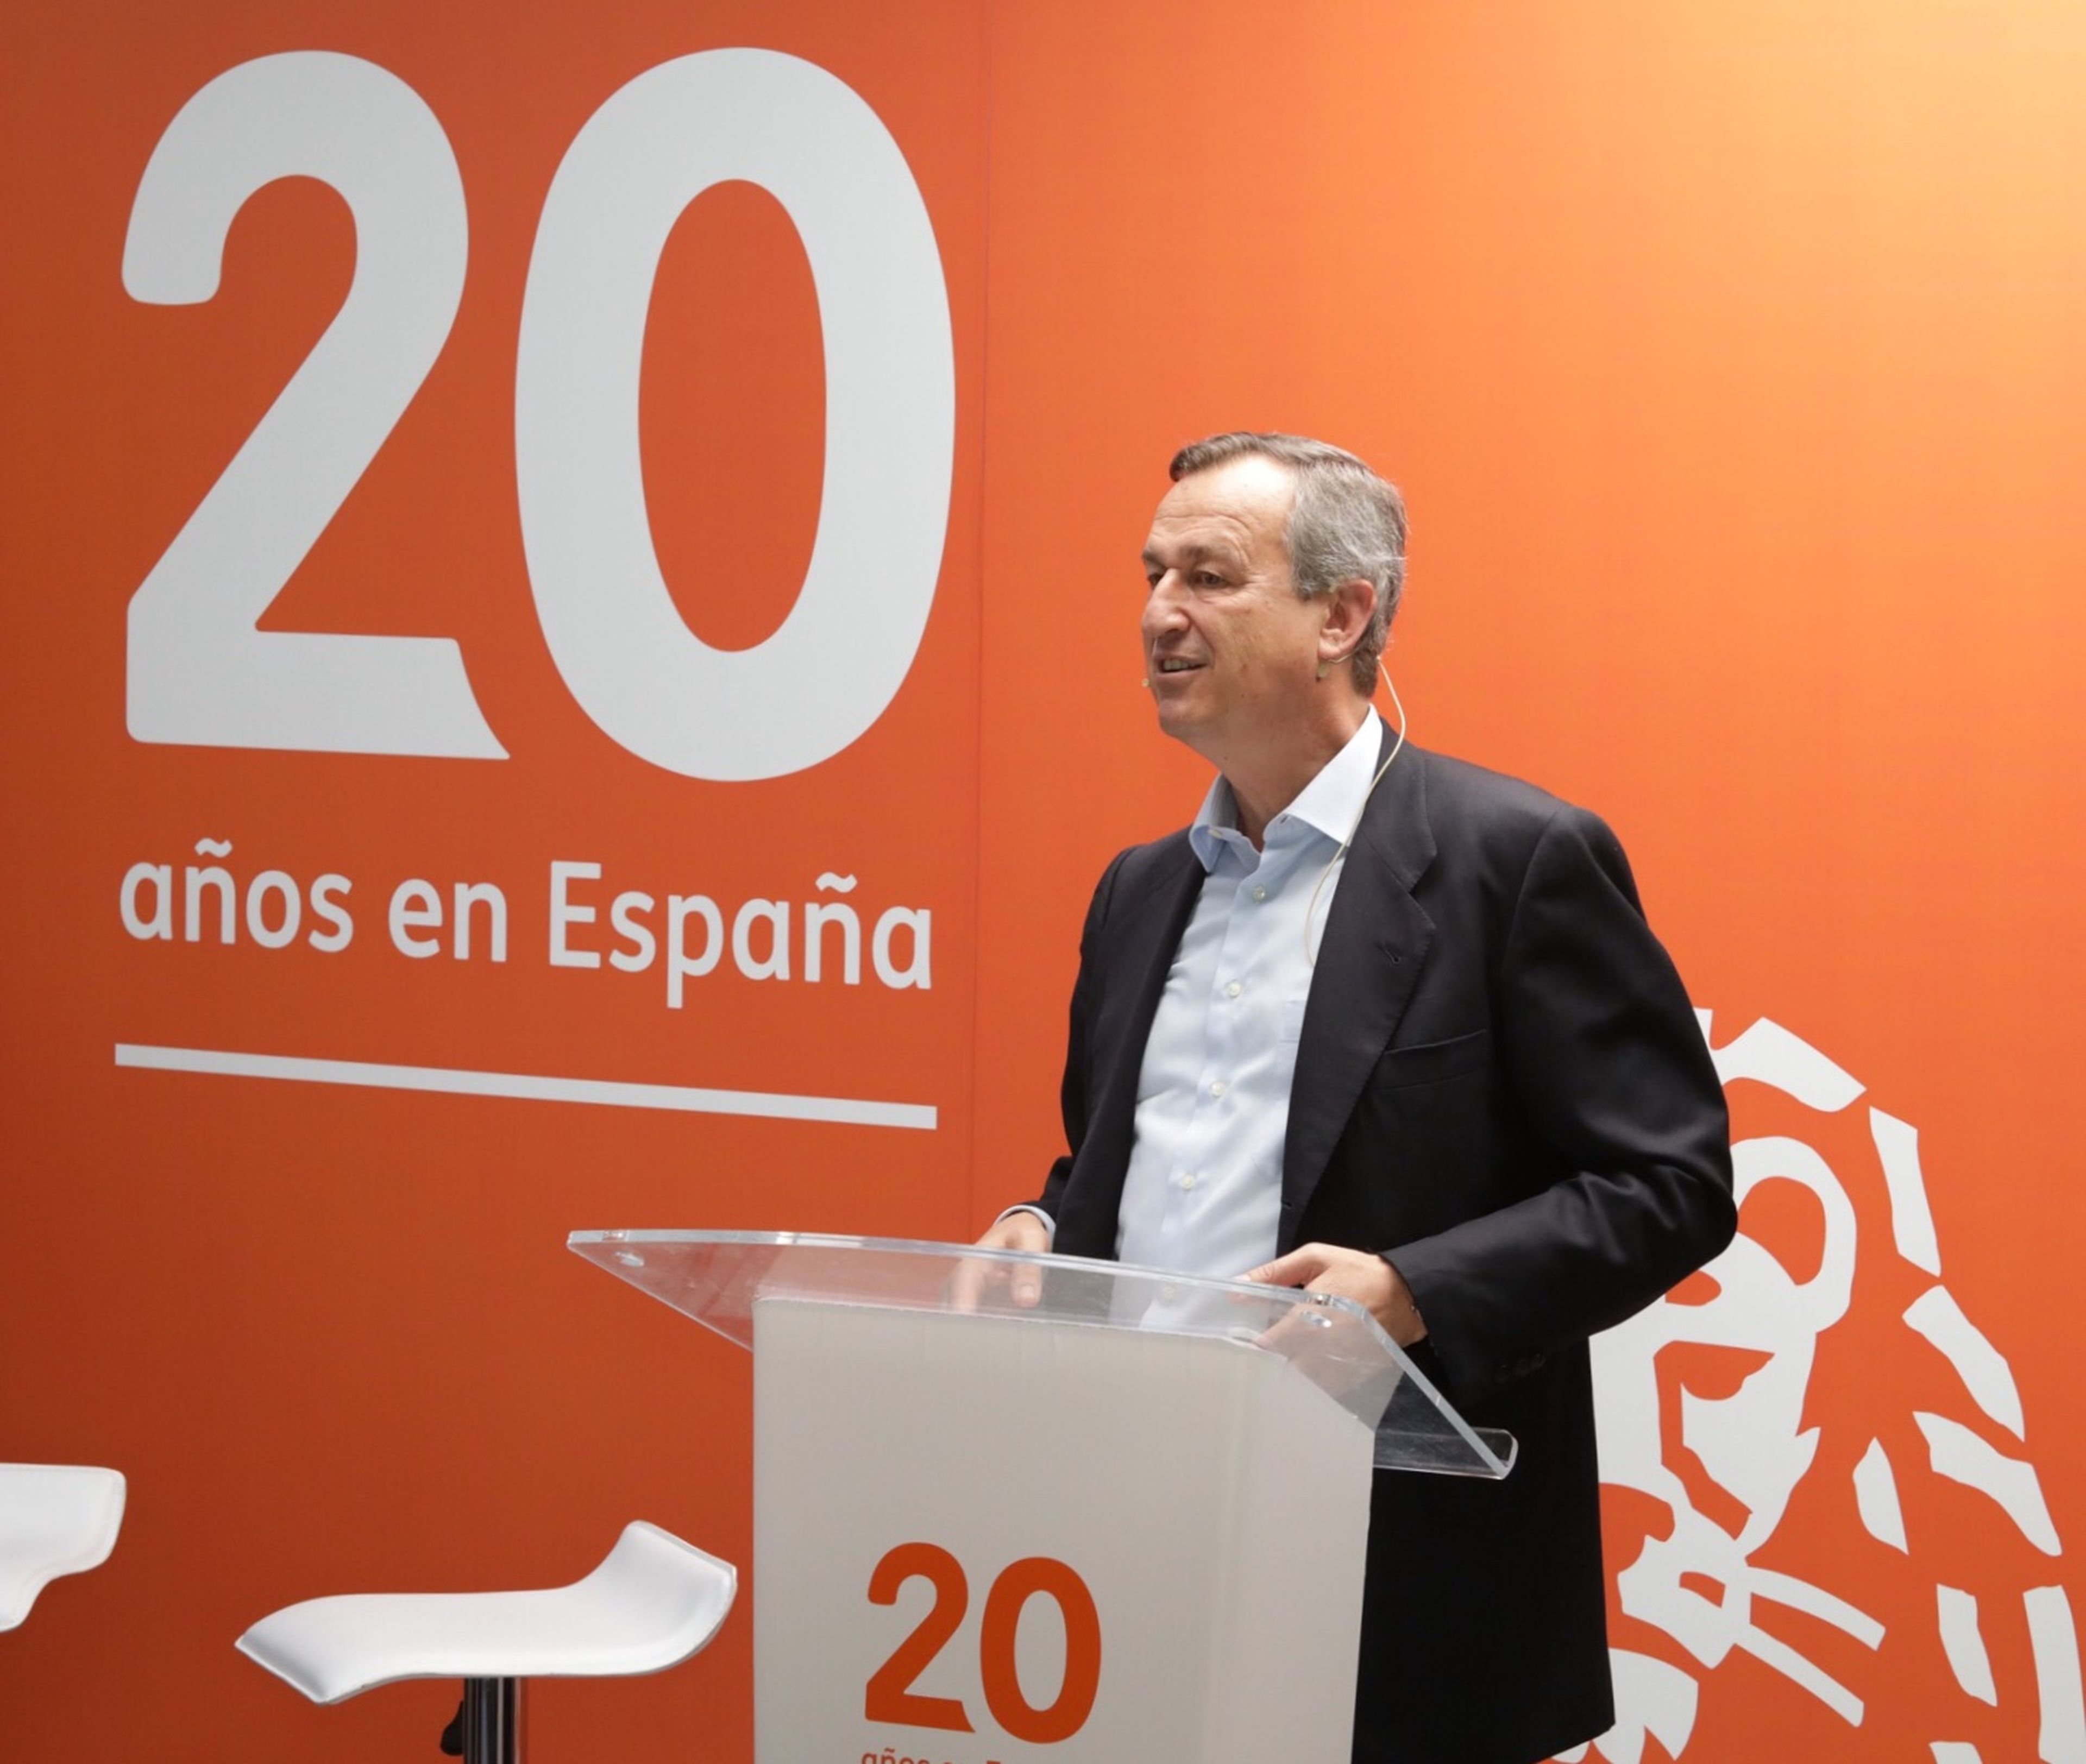 César González-Bueno, consejero delegado de ING en España y Portugal.